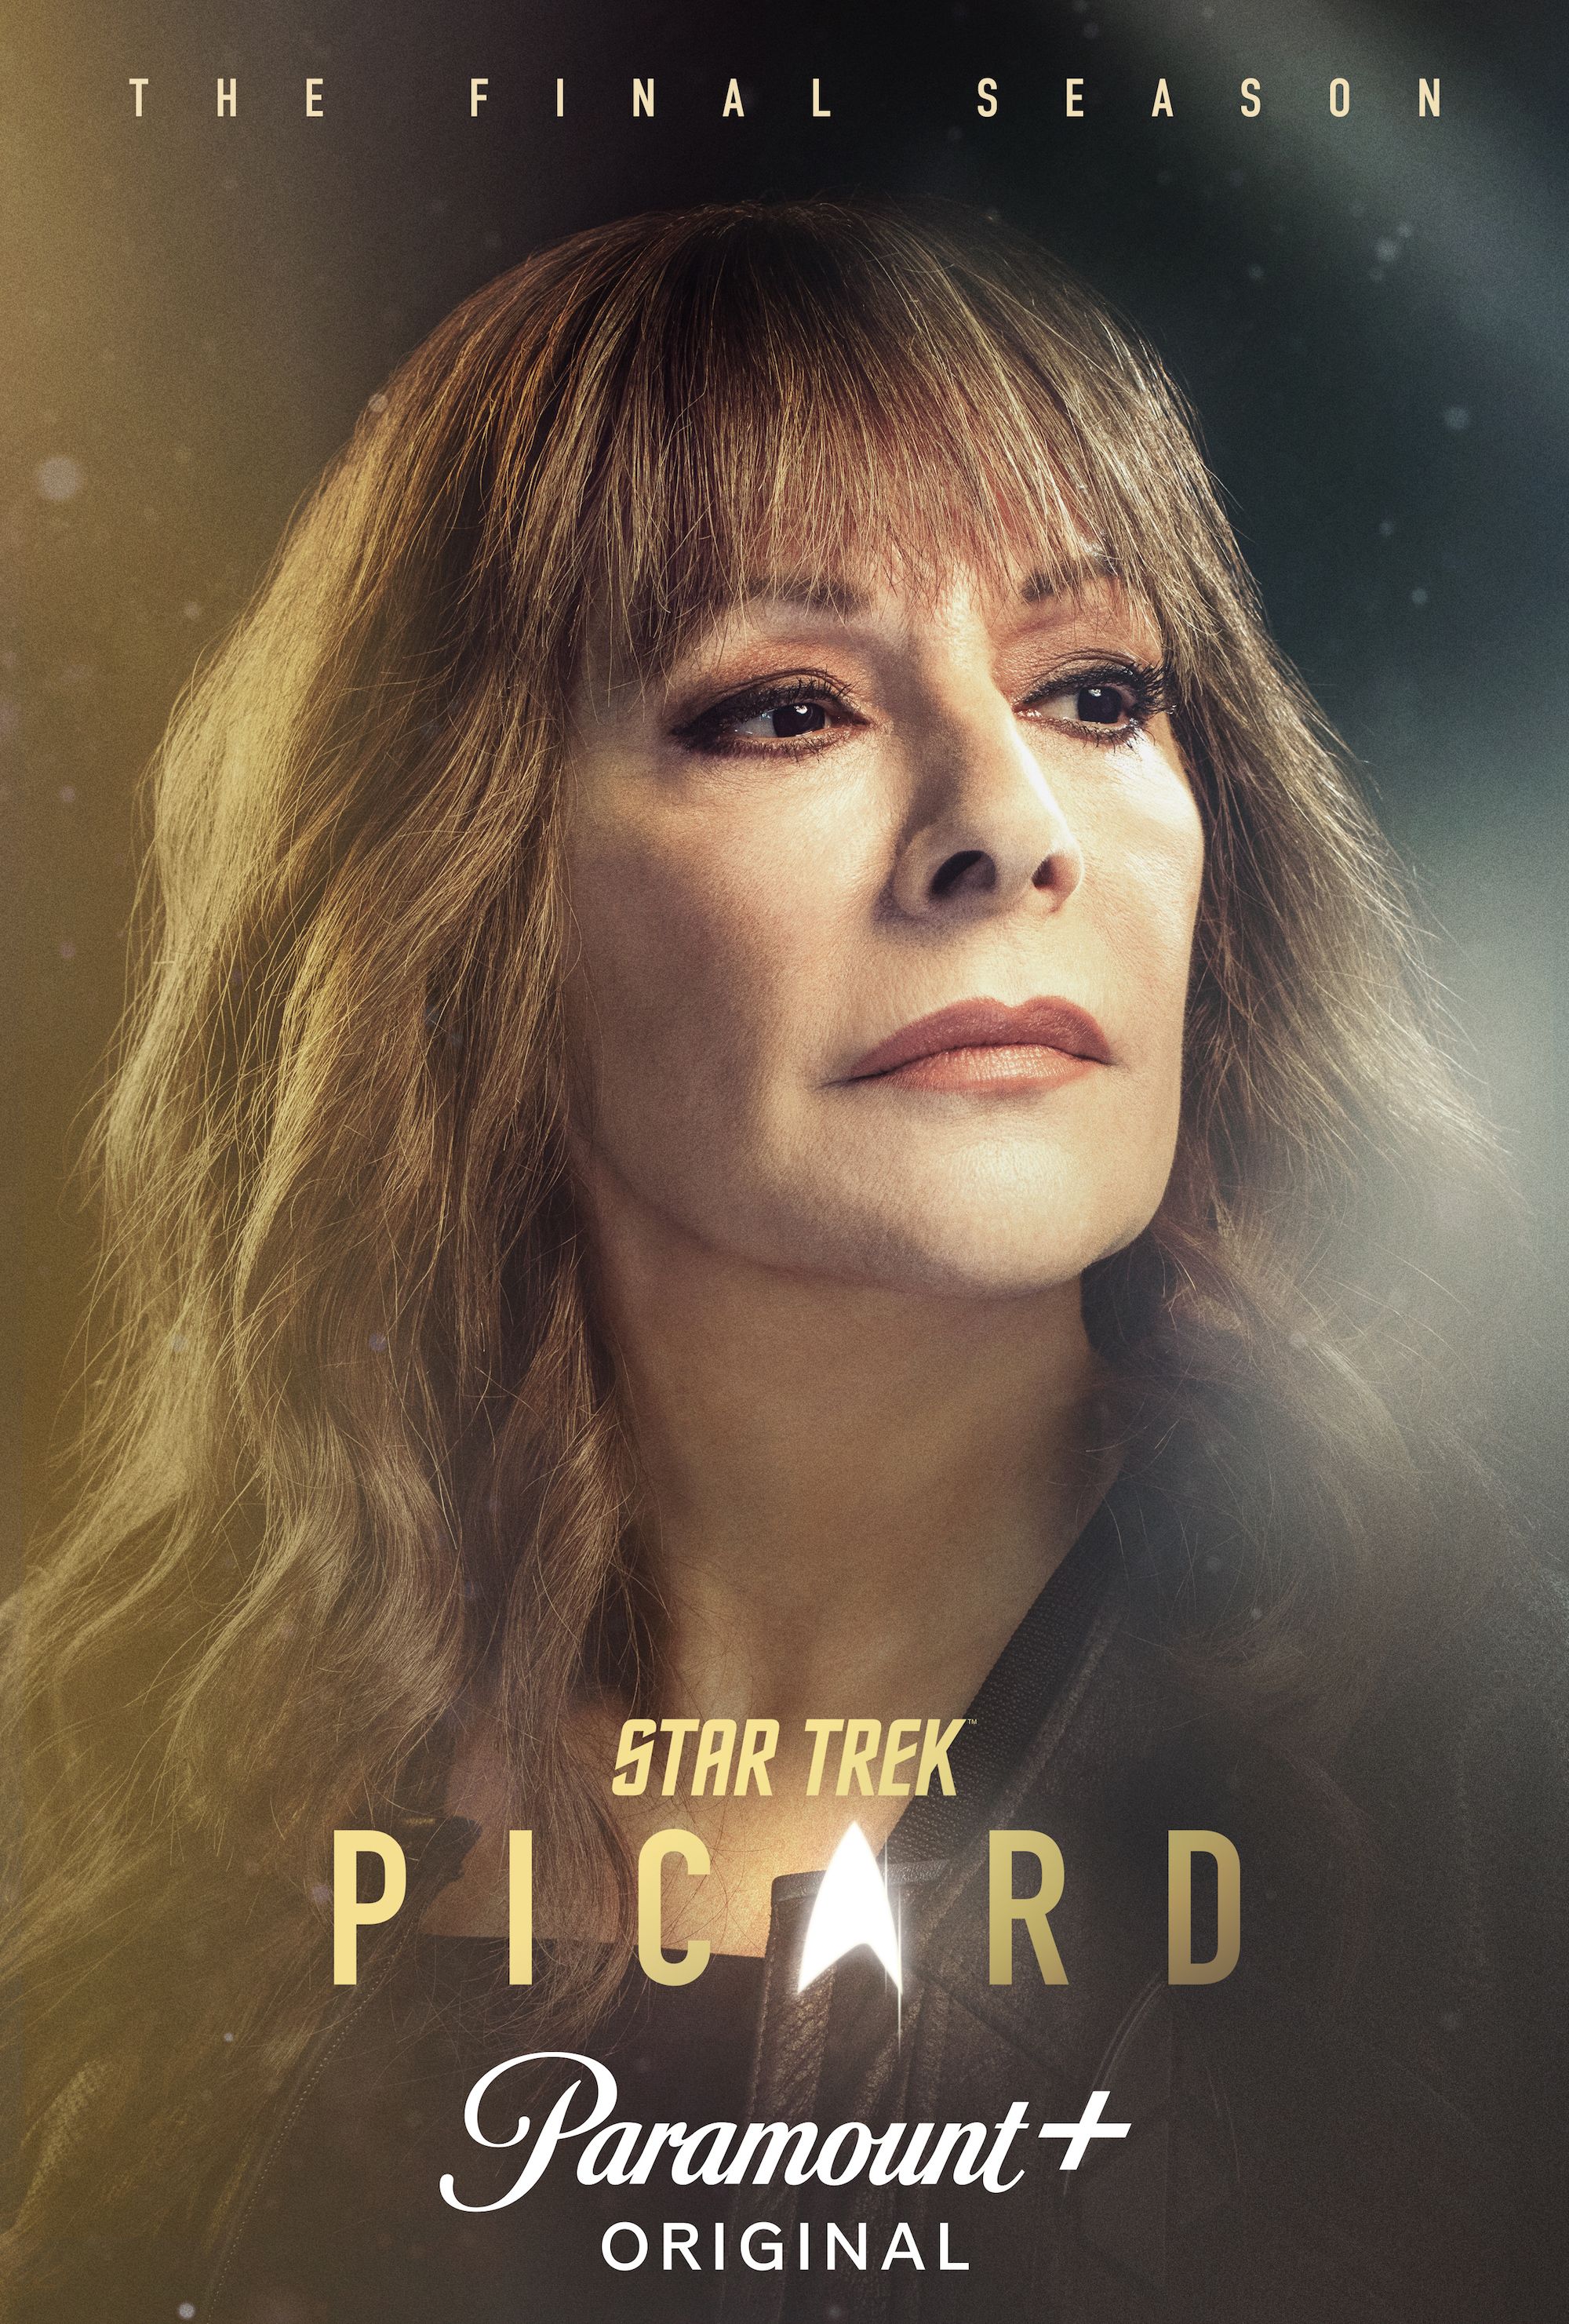 Marina Sirtis as Troi in Star Trek Picard Season 3